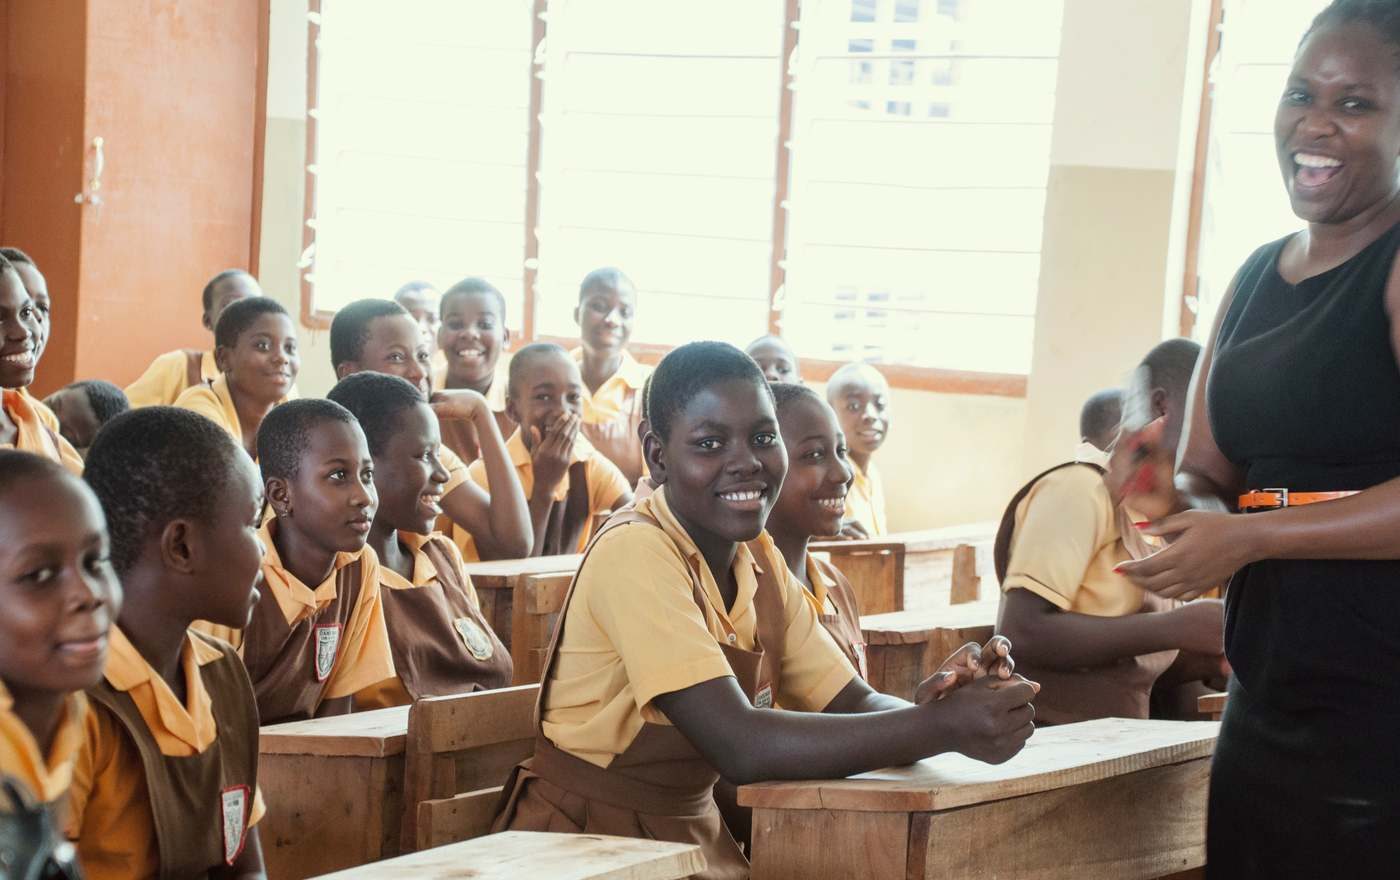 Einen Einblick in das Leben in Afrika gibt der Workshop "Erzähl mir was von Afrika", gestaltet von Brot für die Welt, der Partnerschaft mit Ghana und dem EAWM, der von Pfarrgemeinden und Schulklassen gebucht werden kann. (Foto: Wikipedia/USAAID in Africa Ghana)